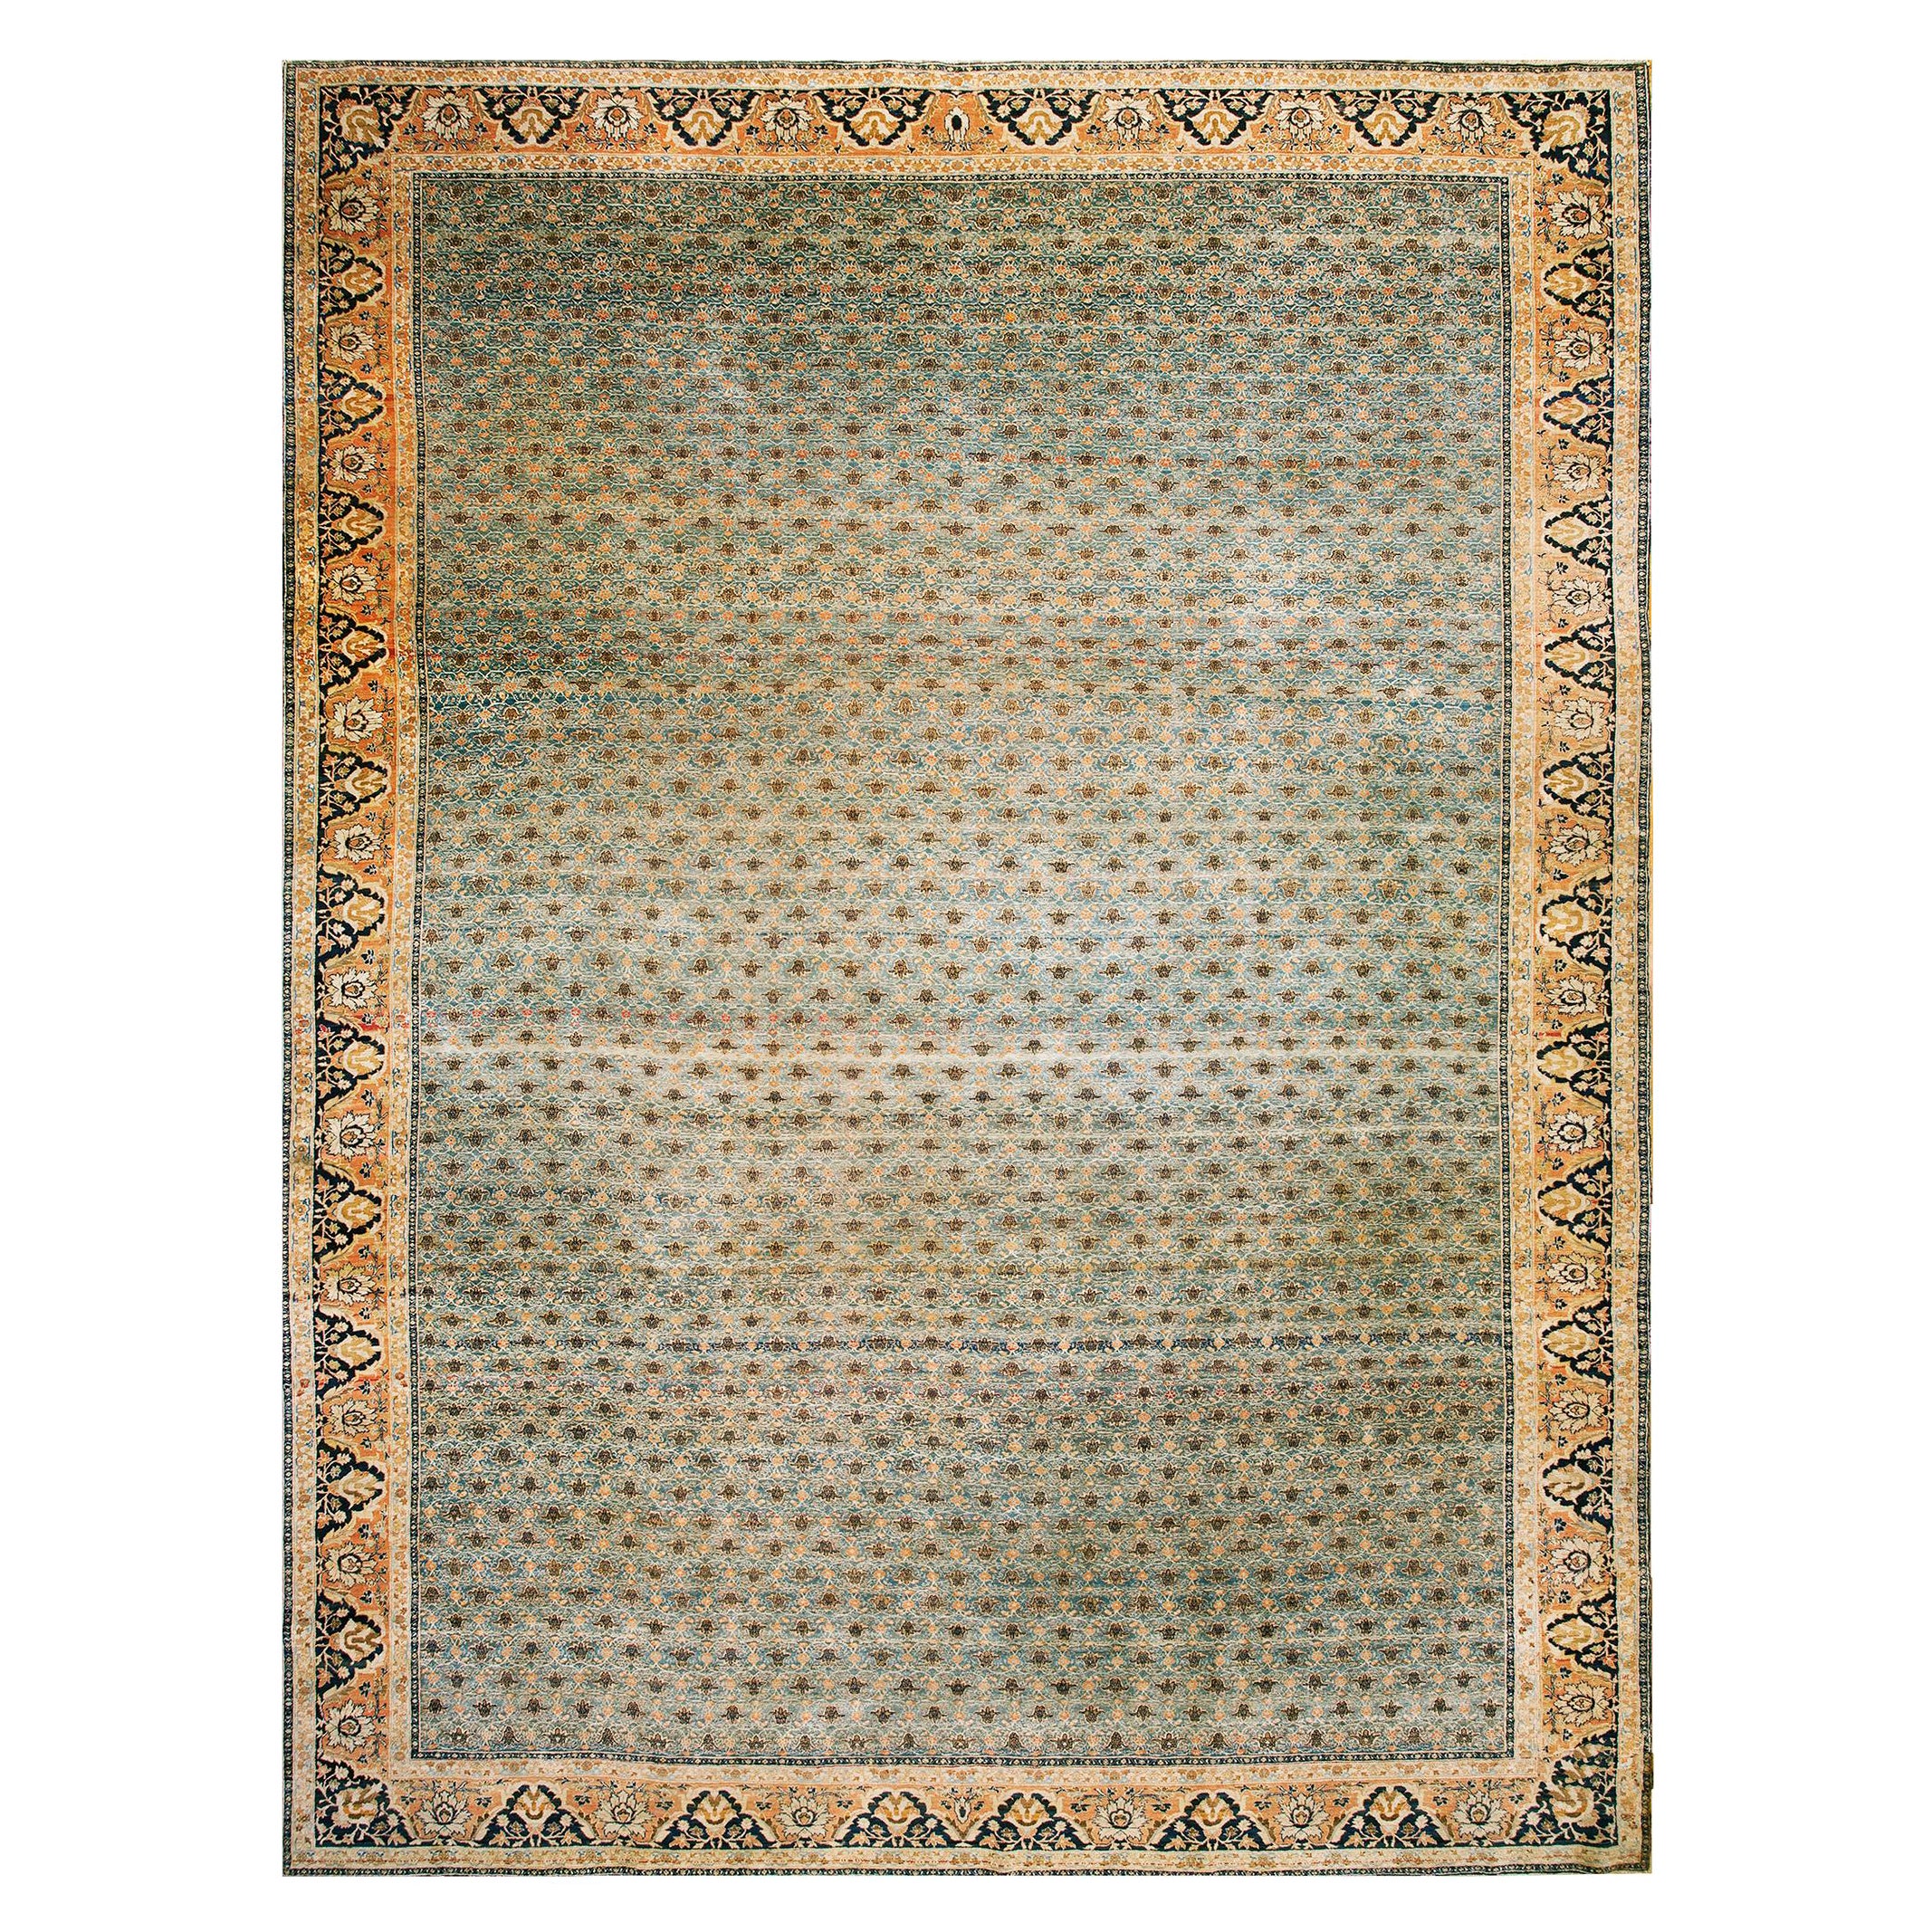 Persischer Täbris Haji Jalili-Teppich aus dem 19. Jahrhundert ( 11'8" x 15'8" - 355 x 477 cm)